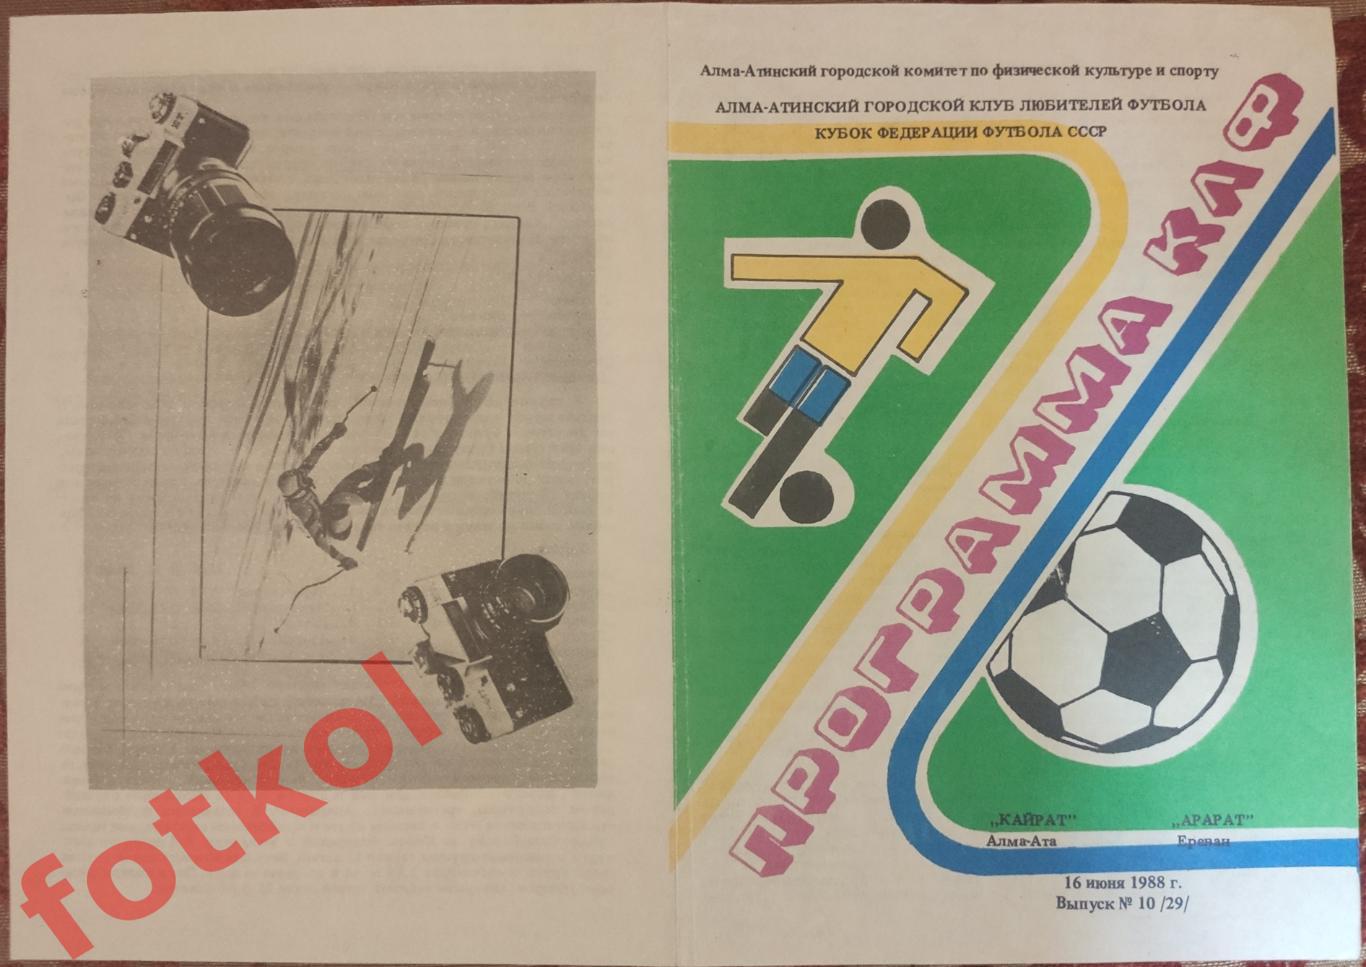 КАЙРАТ Алма - Ата - АРАРАТ Ереван 16.06.1988 КУБОК Федерации Футбола